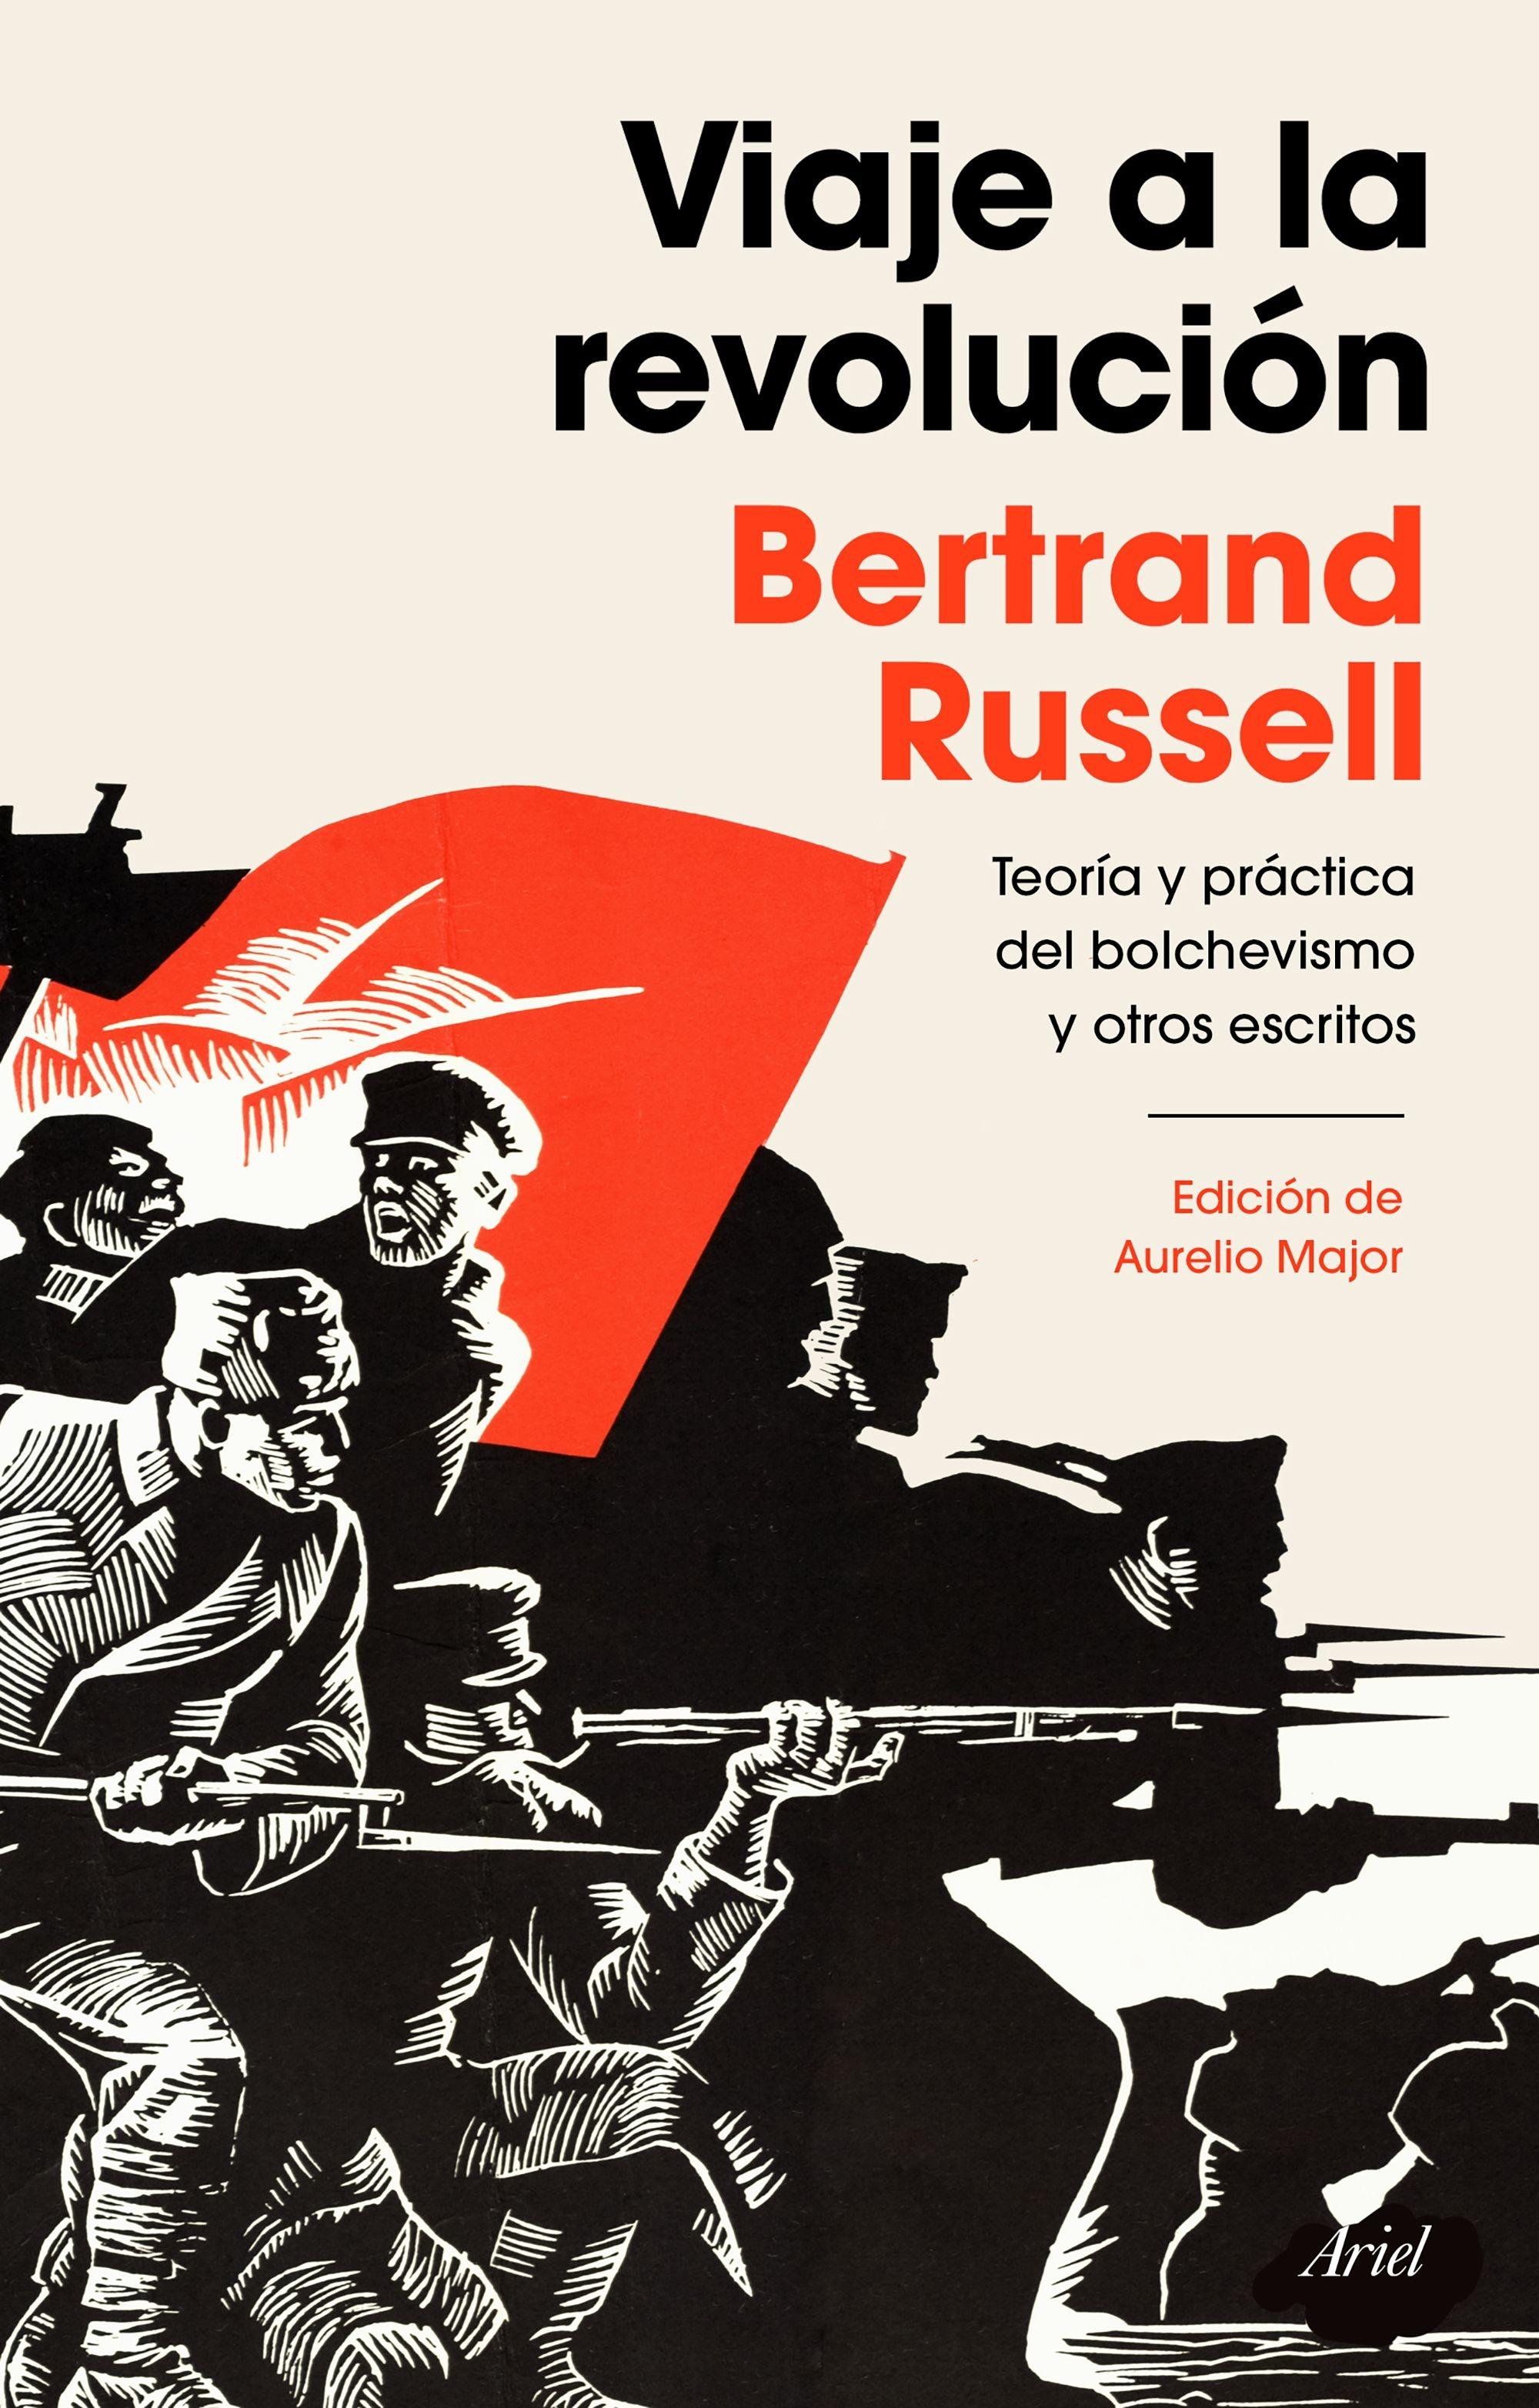 Viaje a la revolución "Práctica y teoría del bolchevismo y otros escritos. Edición de Aurelio M". 